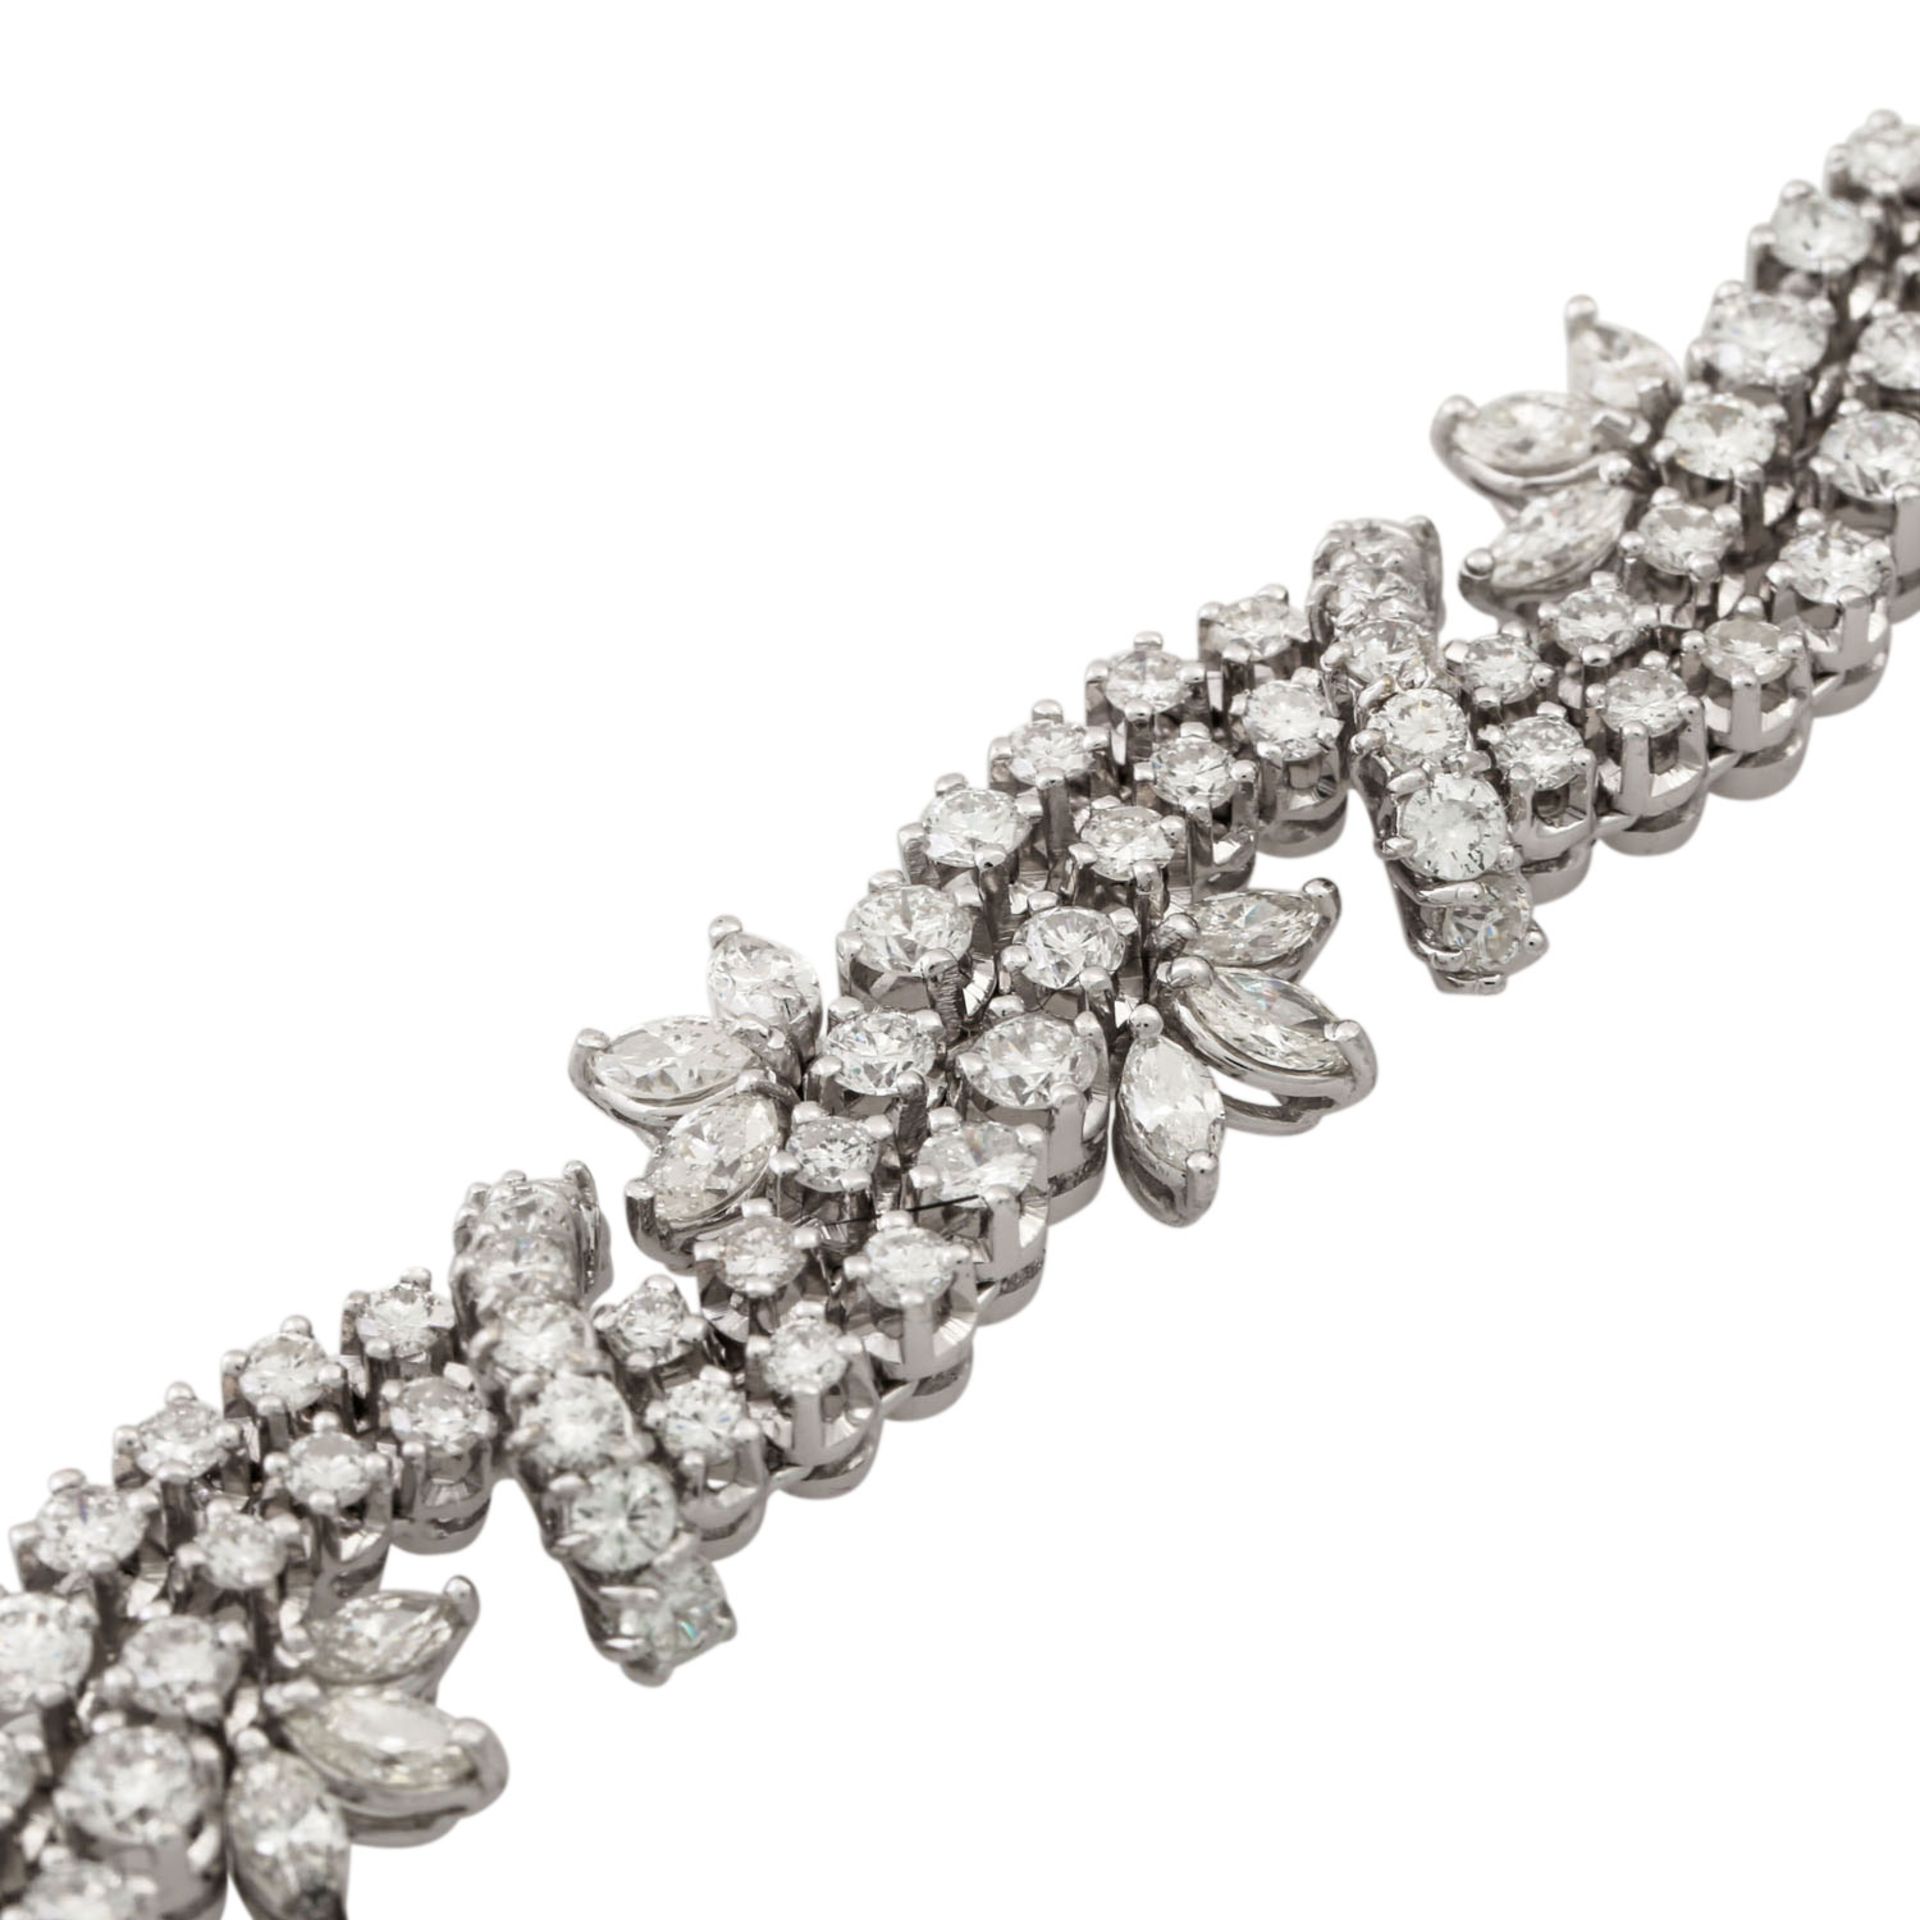 Armband mit 150 Brillanten zus. ca. 10 ct und 36 Diamantnavettes zus. ca. 5,7 ct, ca. - Image 4 of 6